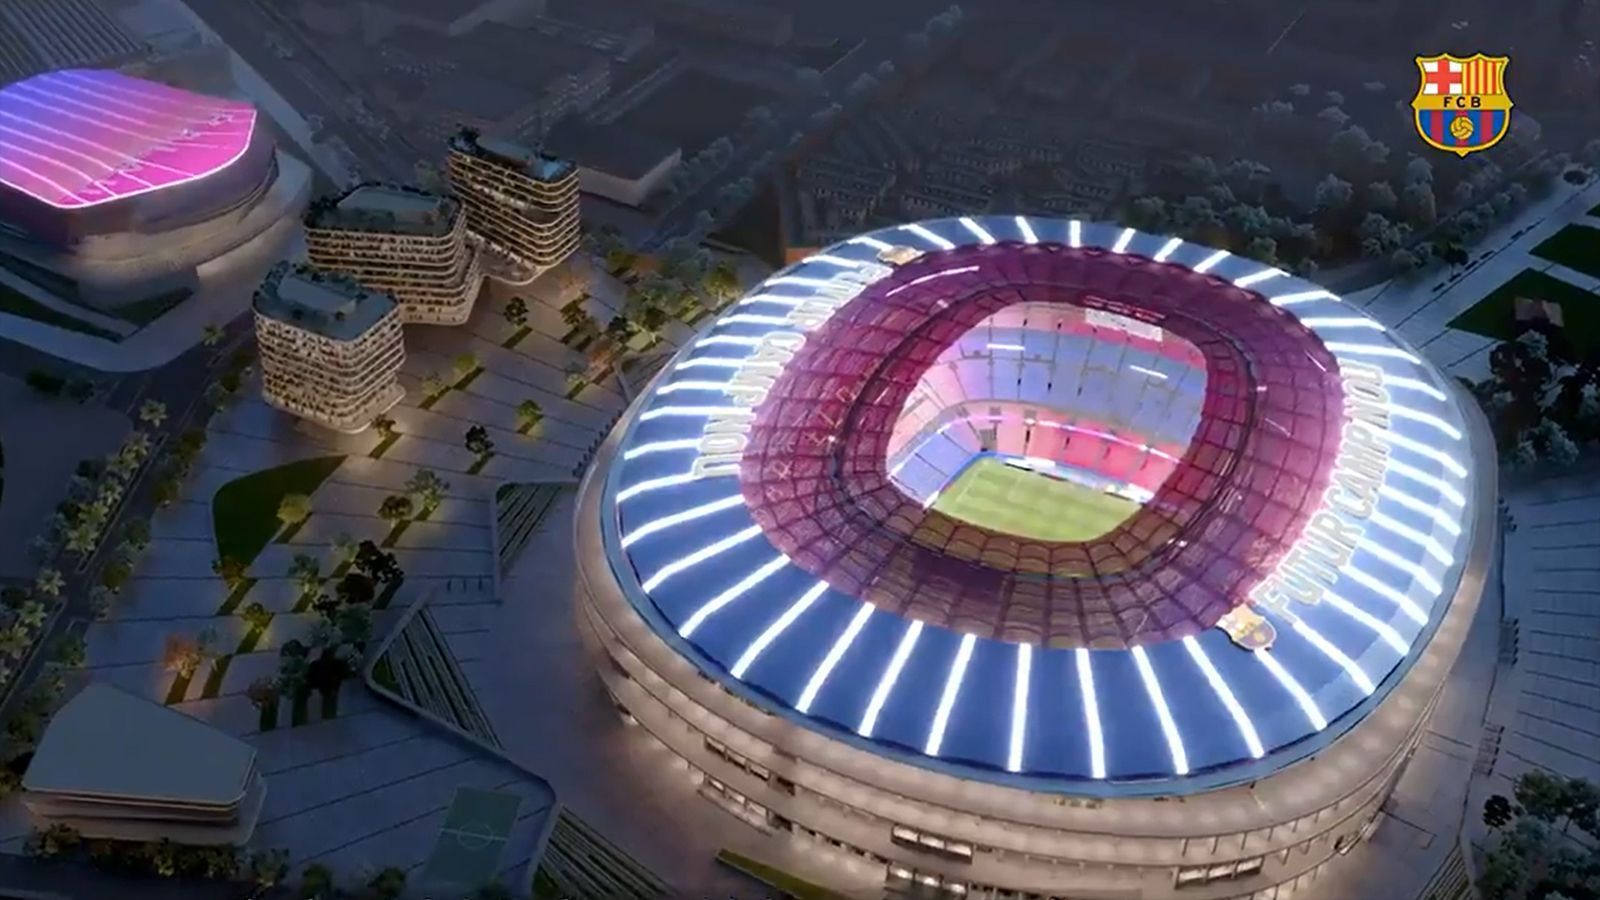 
                <strong>Sanierung von Stadion und Umgebung</strong><br>
                Und so soll es am Ende aussehen: Das Camp Nou erstrahlt im neuen Glanz. Auch der Bereich außerhalb der Sportstätten soll dabei saniert werden.
              